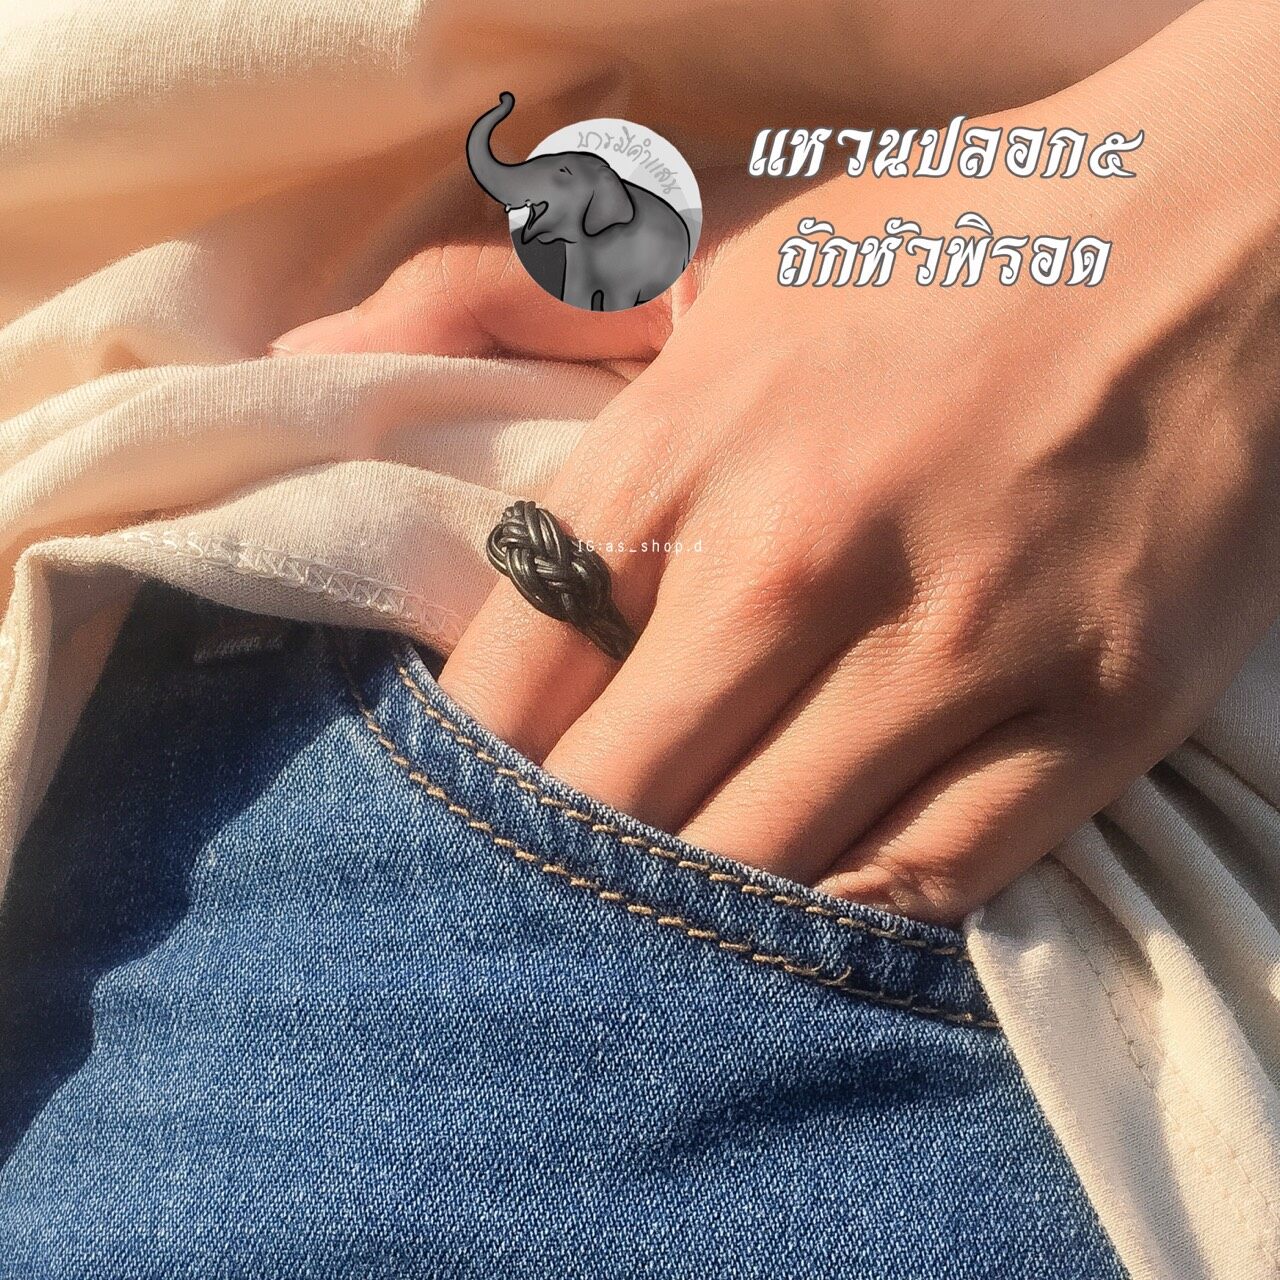 แหวนพิรอด แหวนหางช้าง แบบปลอก5 ถักหัวพิรอด แหวนมงคล ของดีเมืองช้าง เครื่องประดับ หางช้างไทยแท้